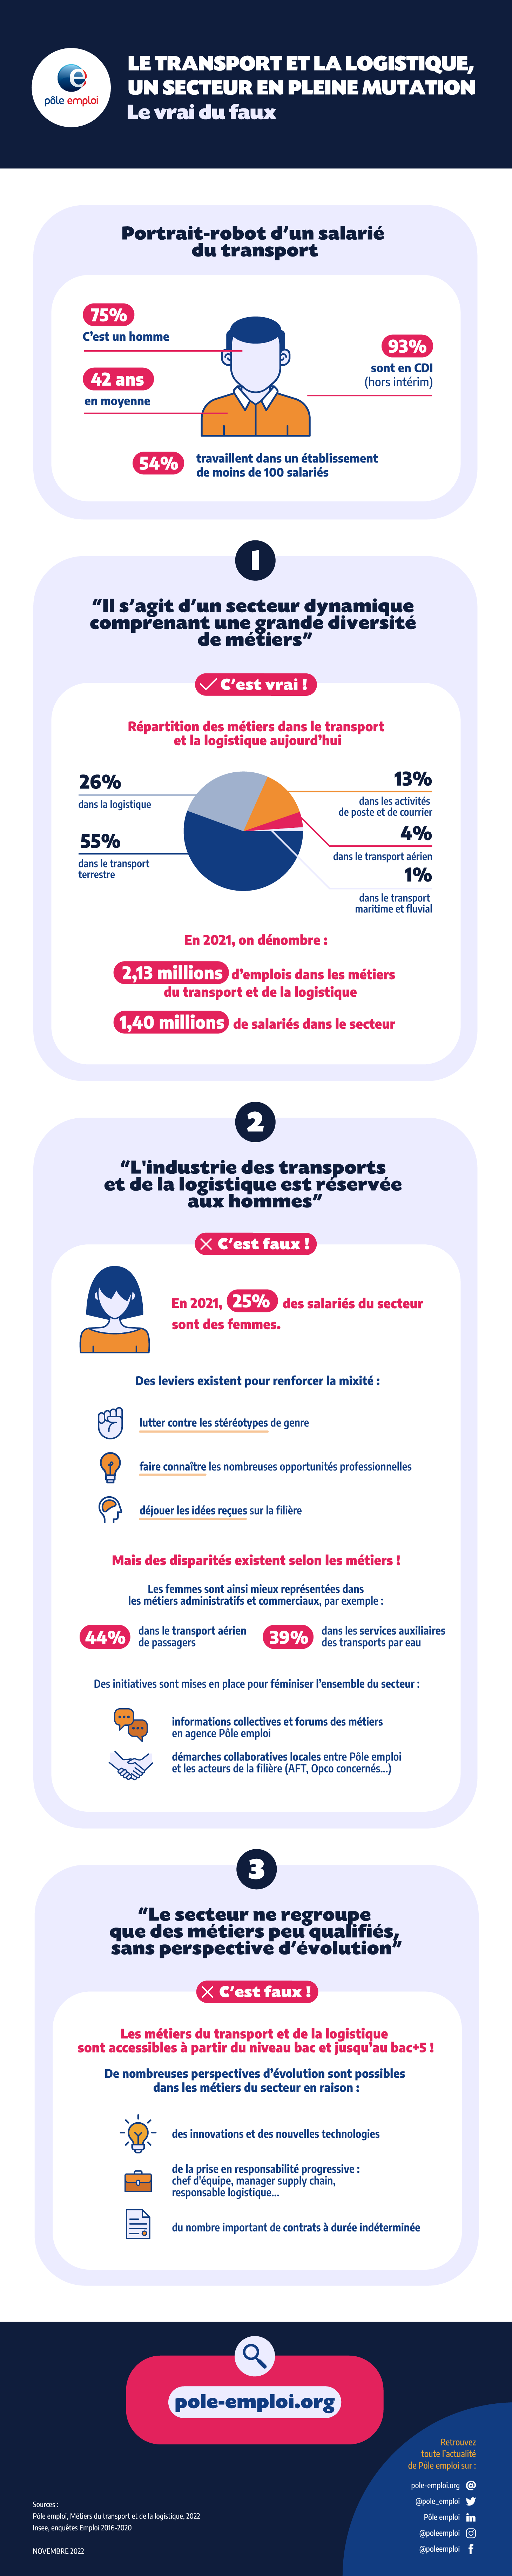 Infographie - Le transport et la logistique - Vdef.png